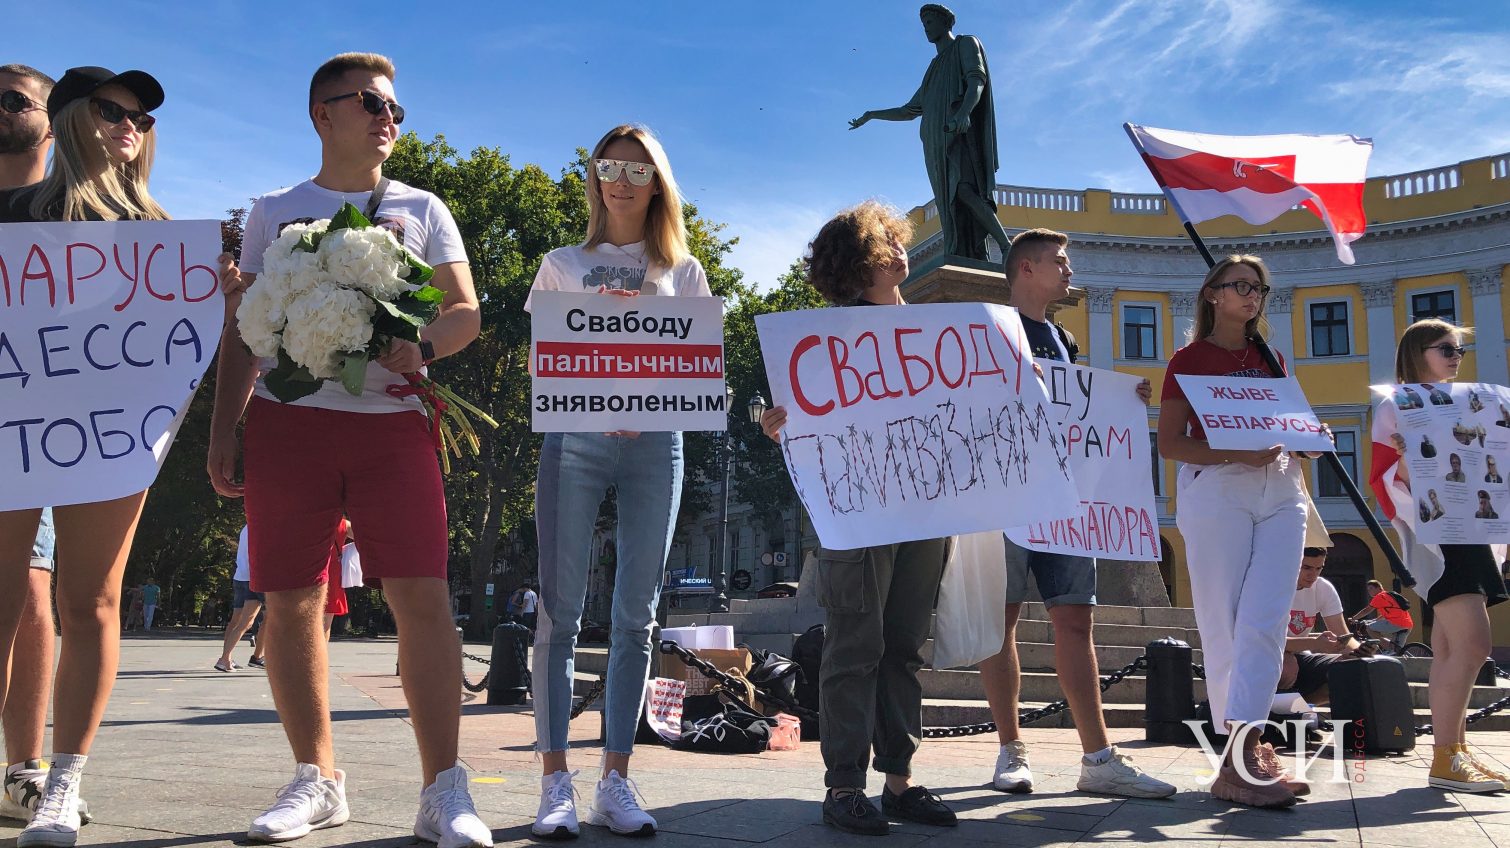 “Мы приехали сюда не устраивать майданы, а в поисках безопасности”: белорусы рассказали, зачем они проводят акции в Одессе «фото»